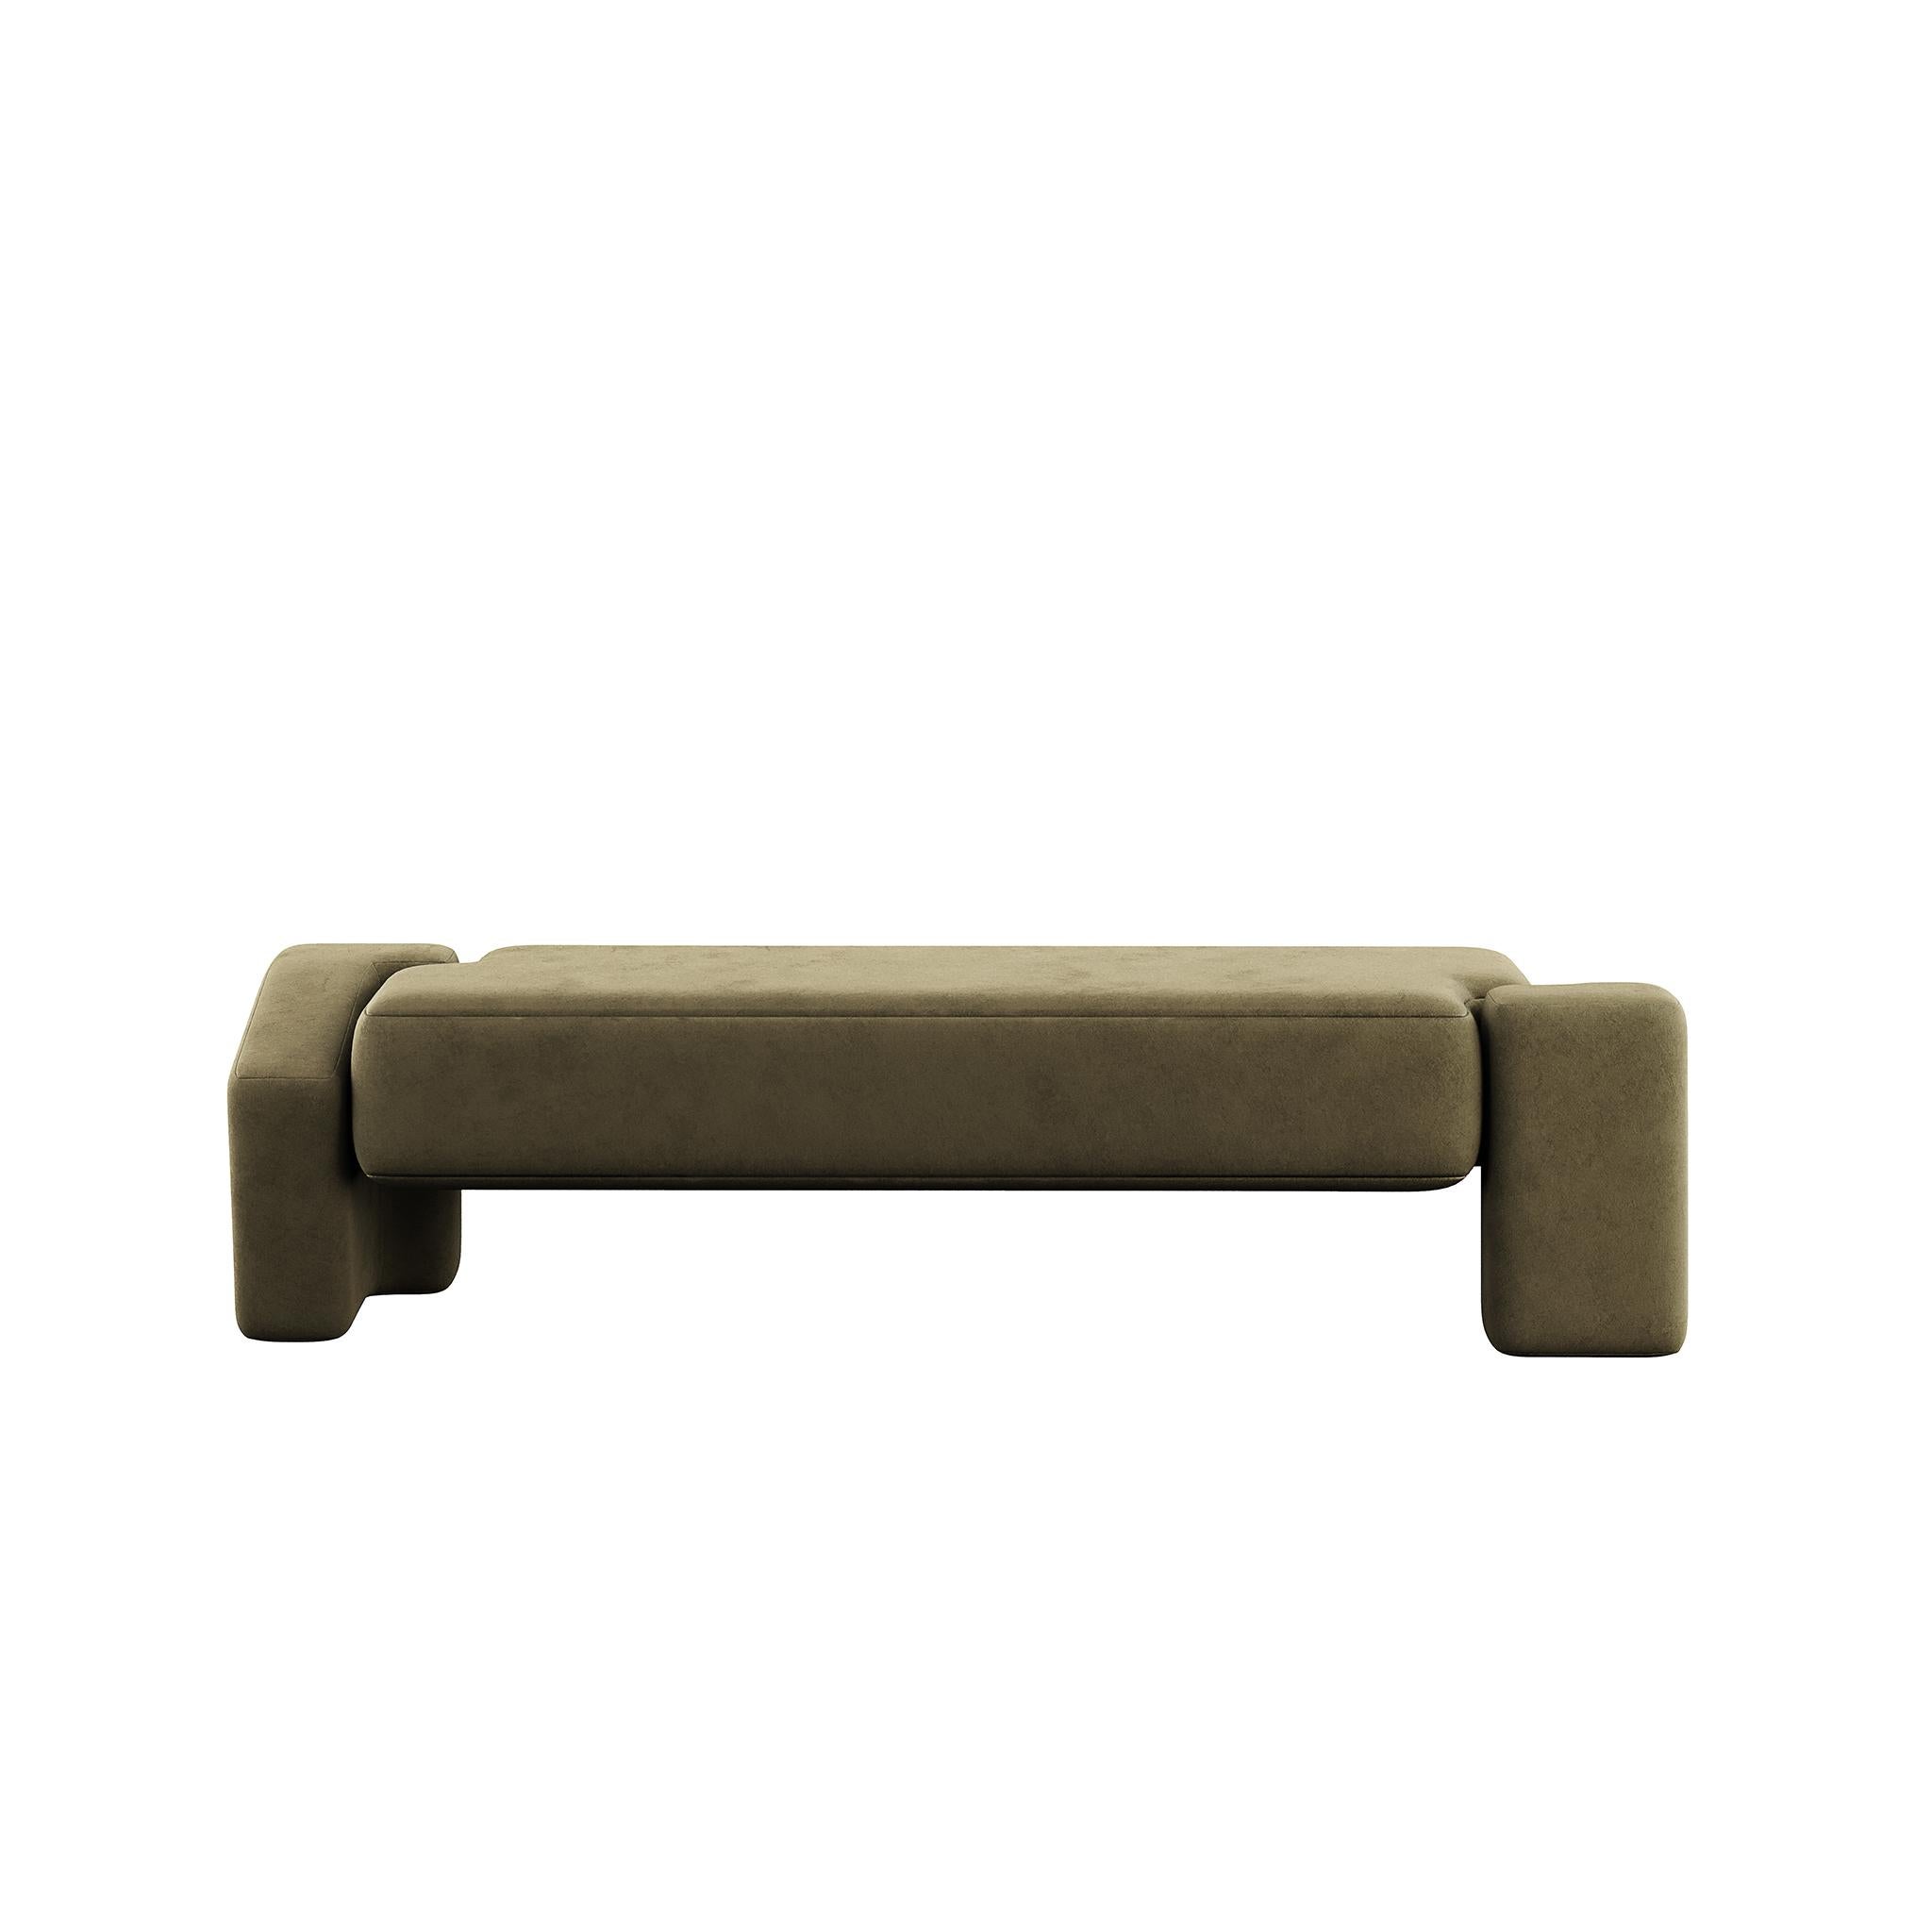 Die Kang Suede Bench in Grün ist ein auffälliges Möbelstück, das Ästhetik und Funktionalität nahtlos miteinander verbindet.
Diese mit viel Liebe zum Detail gefertigte Bank verleiht nicht nur jedem Raum einen Hauch von Raffinesse, sondern sorgt auch